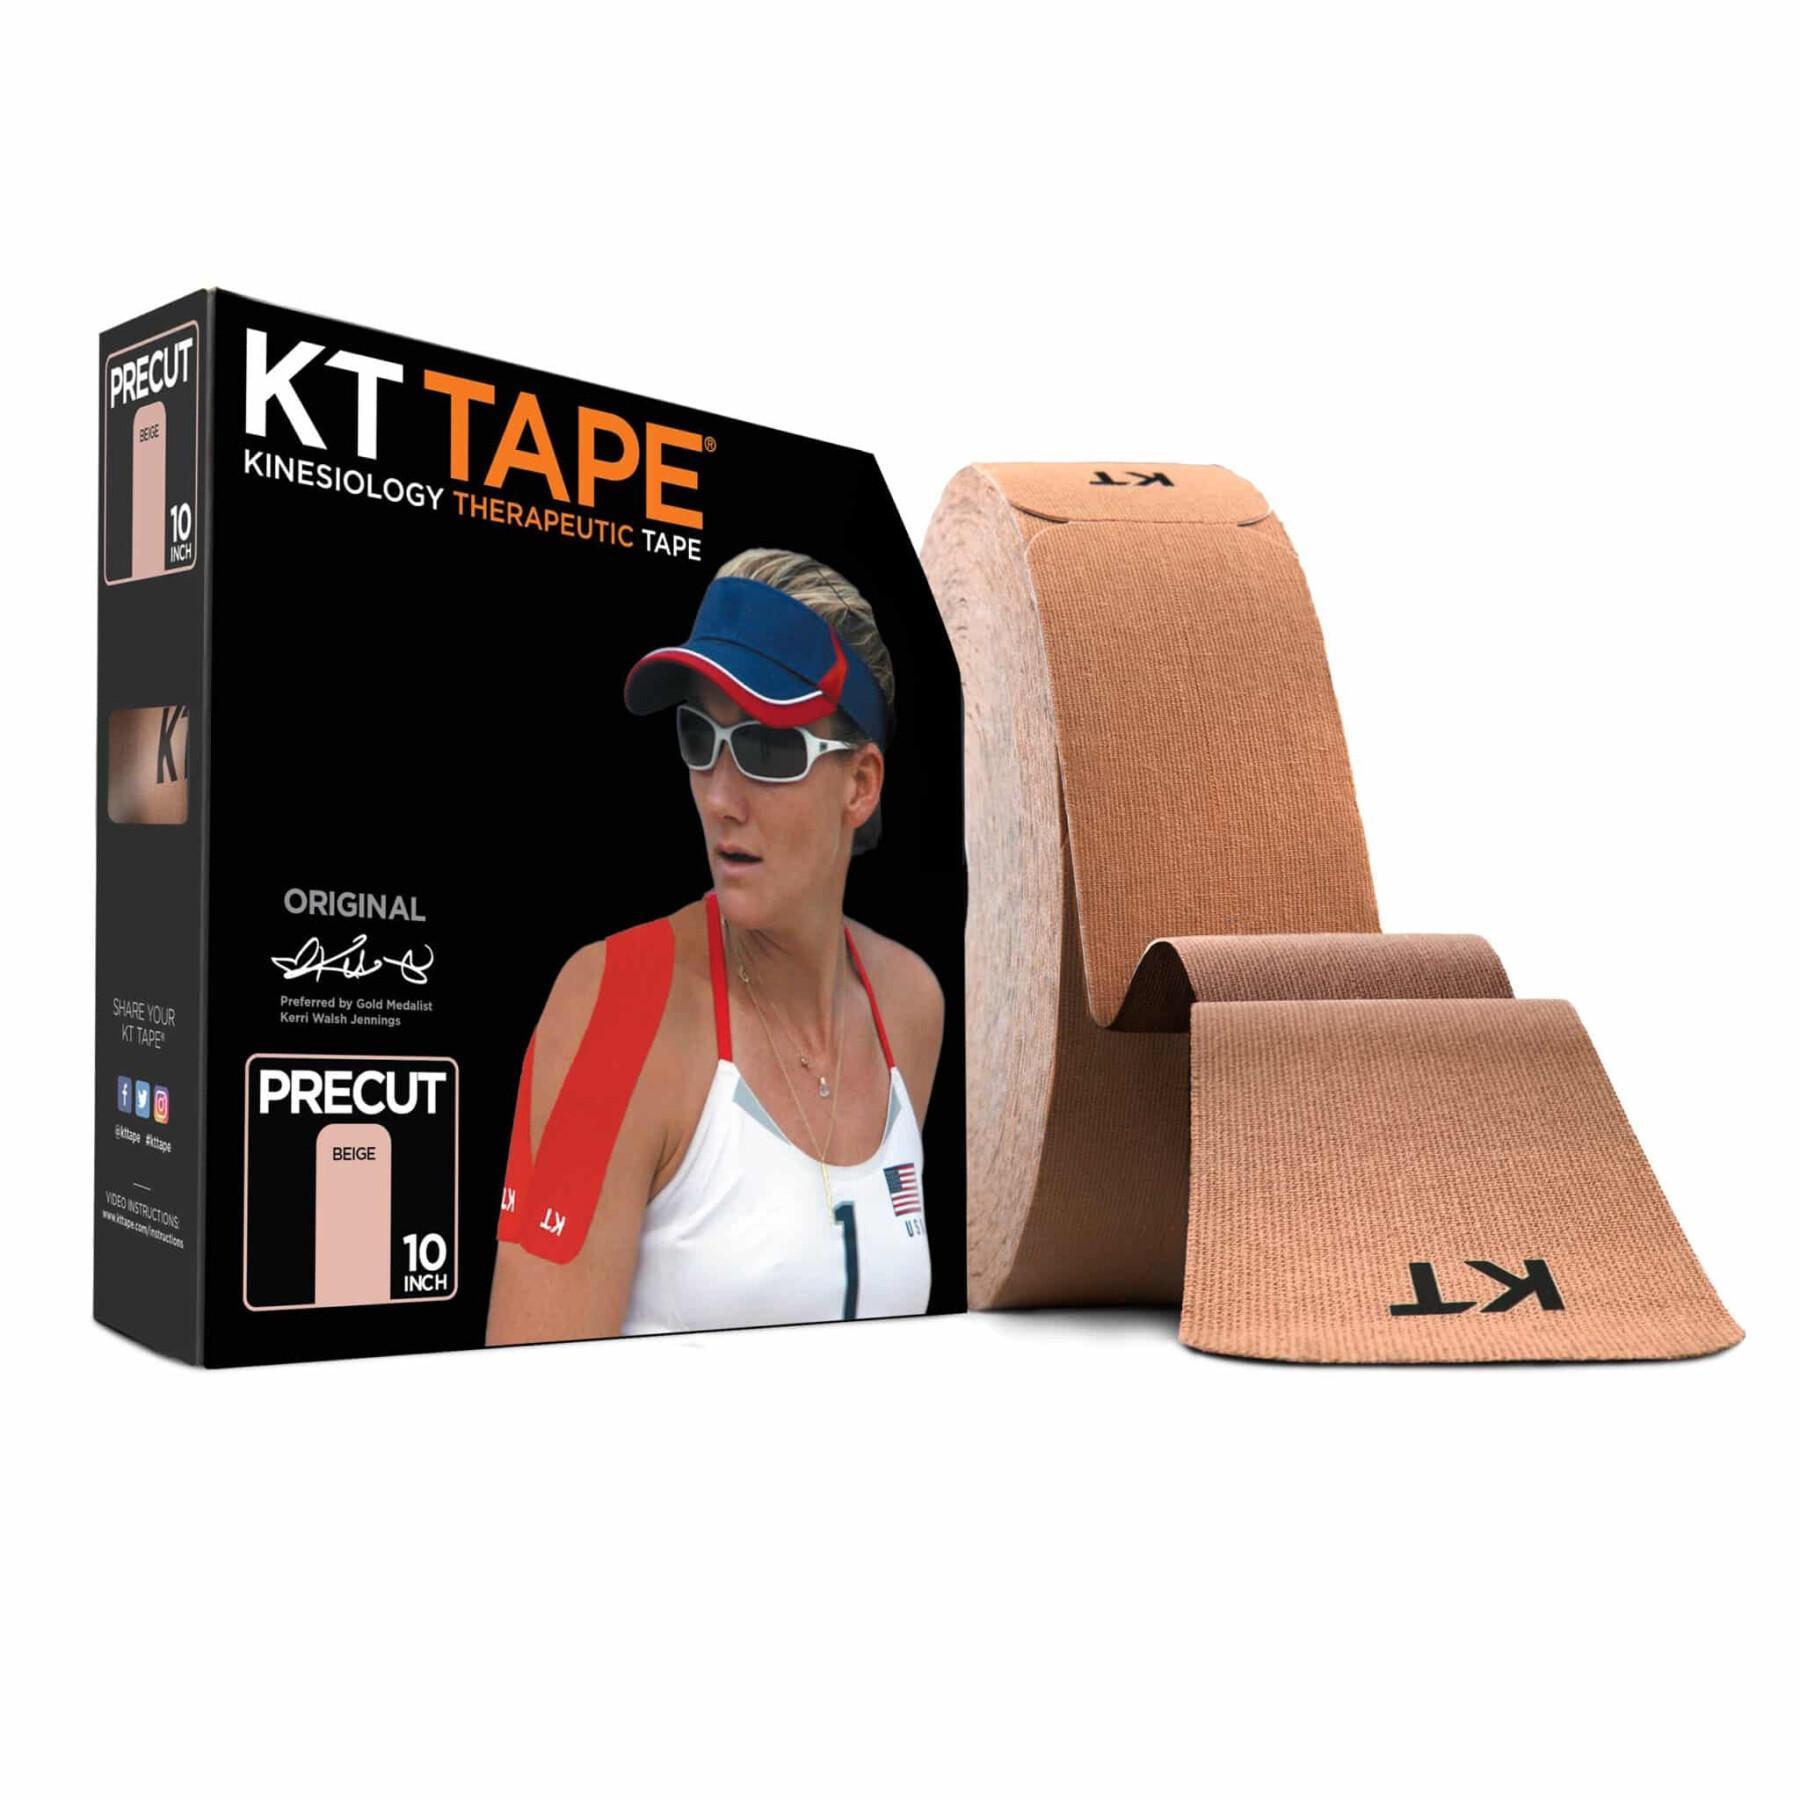 Dispositivo de massagem KT Tape Recovery+ Wave